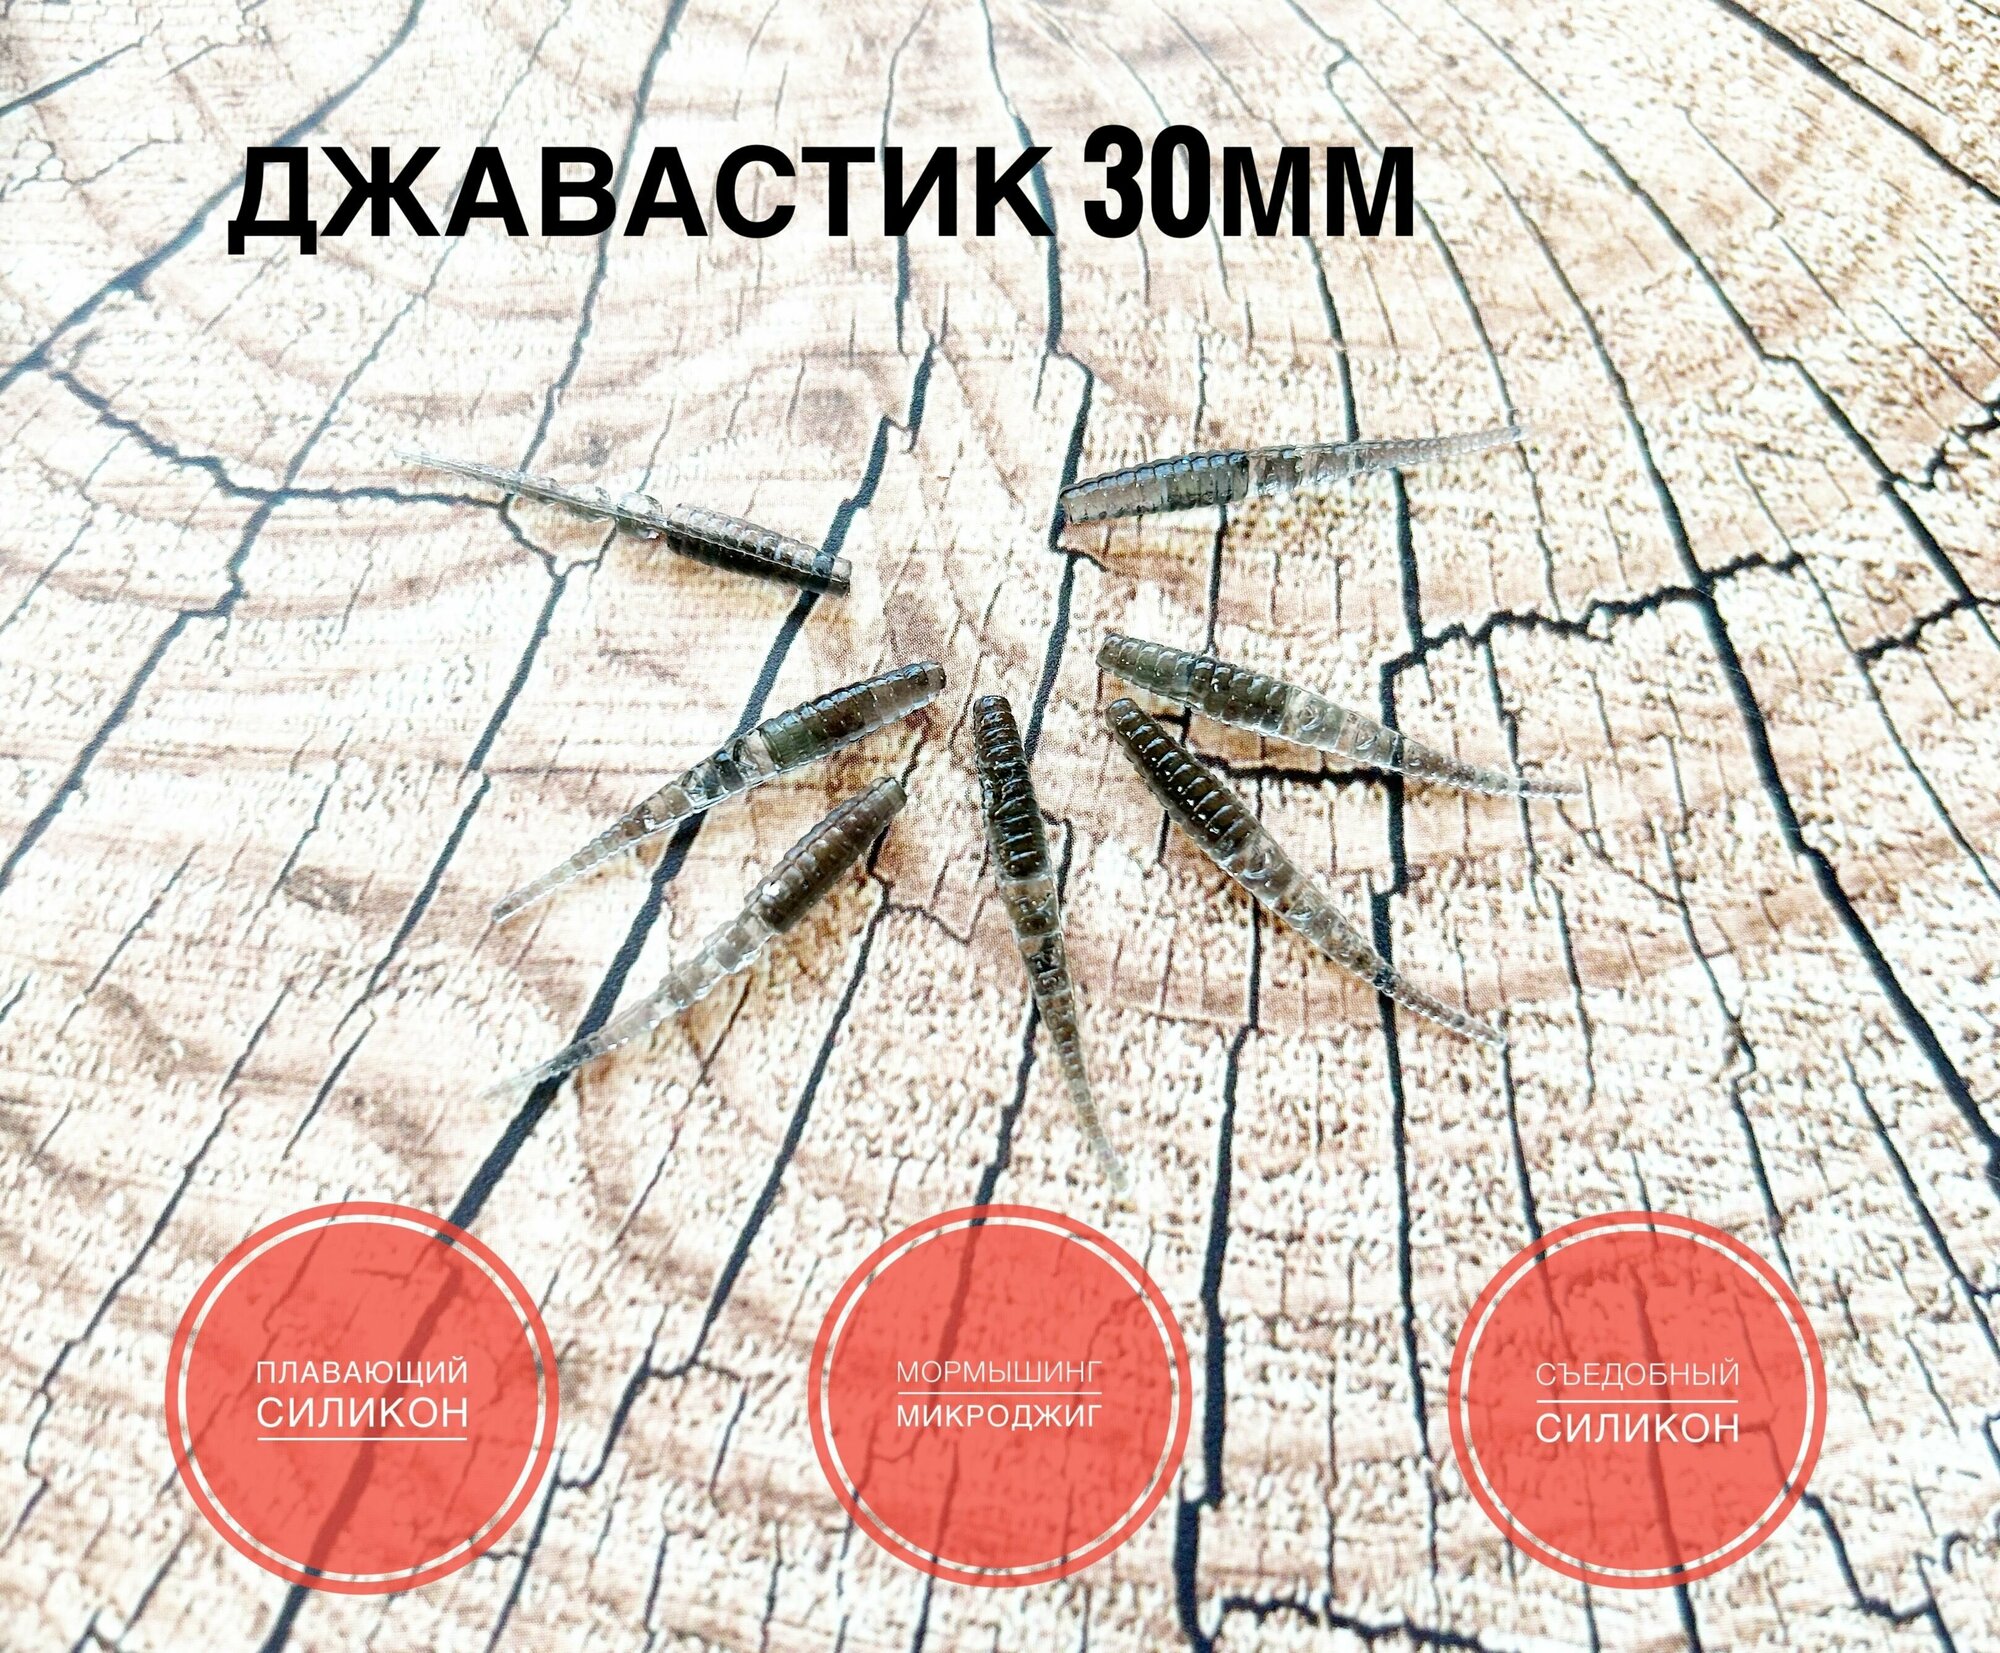 Мягкая Силиконовая приманка для мормышинга Джавастик 30 мм, цвет Натурал/Natural, уп. 20 шт.